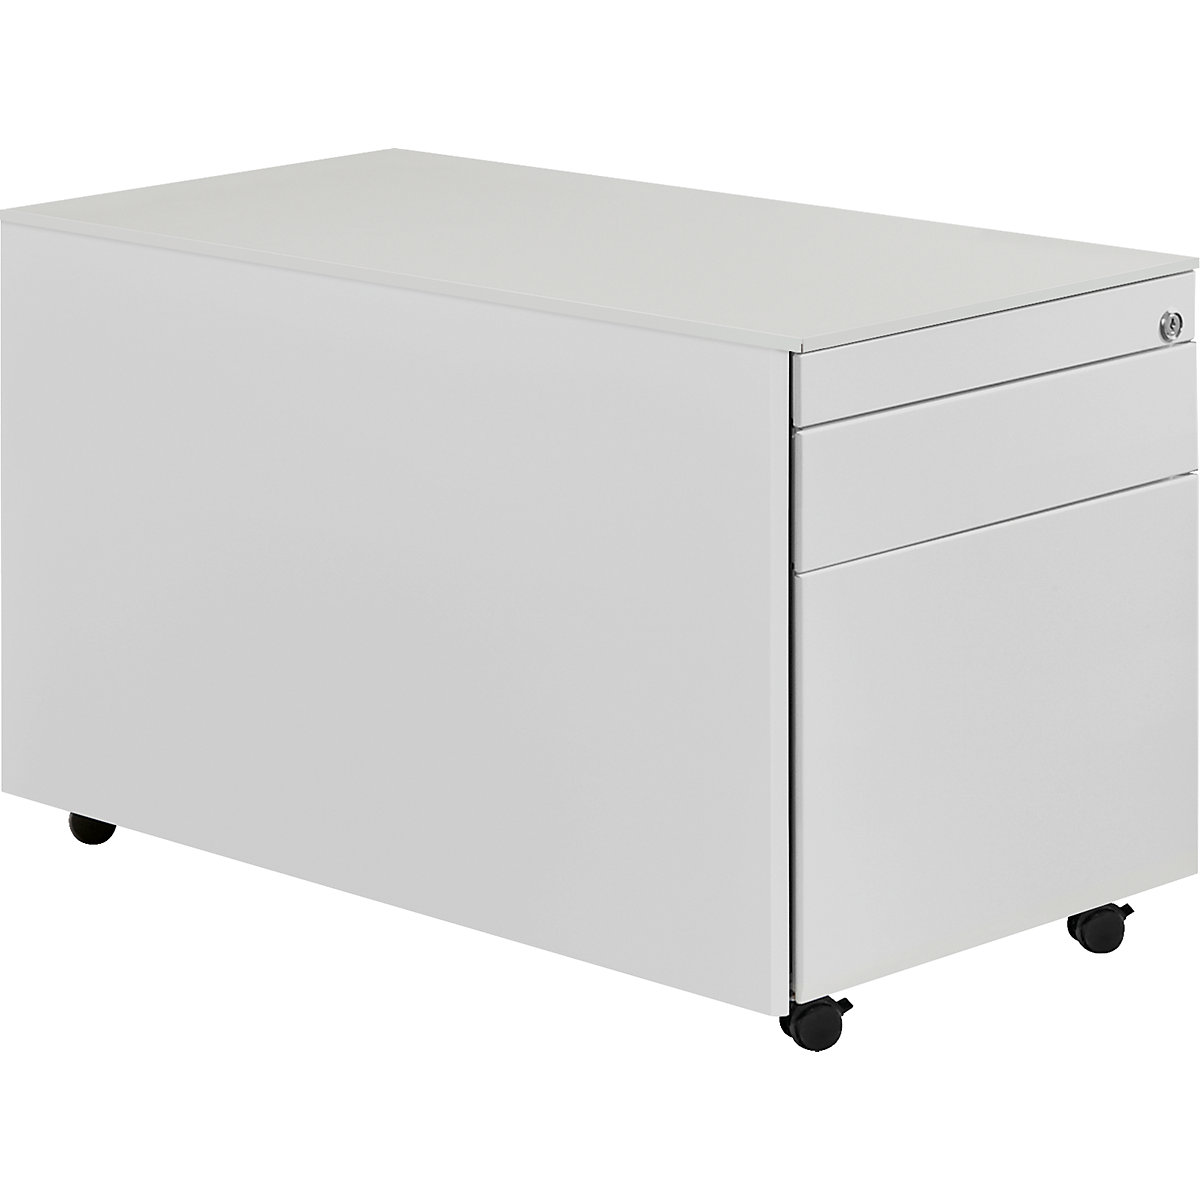 Drawer pedestal with castors – mauser, HxD 520 x 800 mm, 1 drawer, 1 suspension file drawer, light grey / light grey / light grey-6